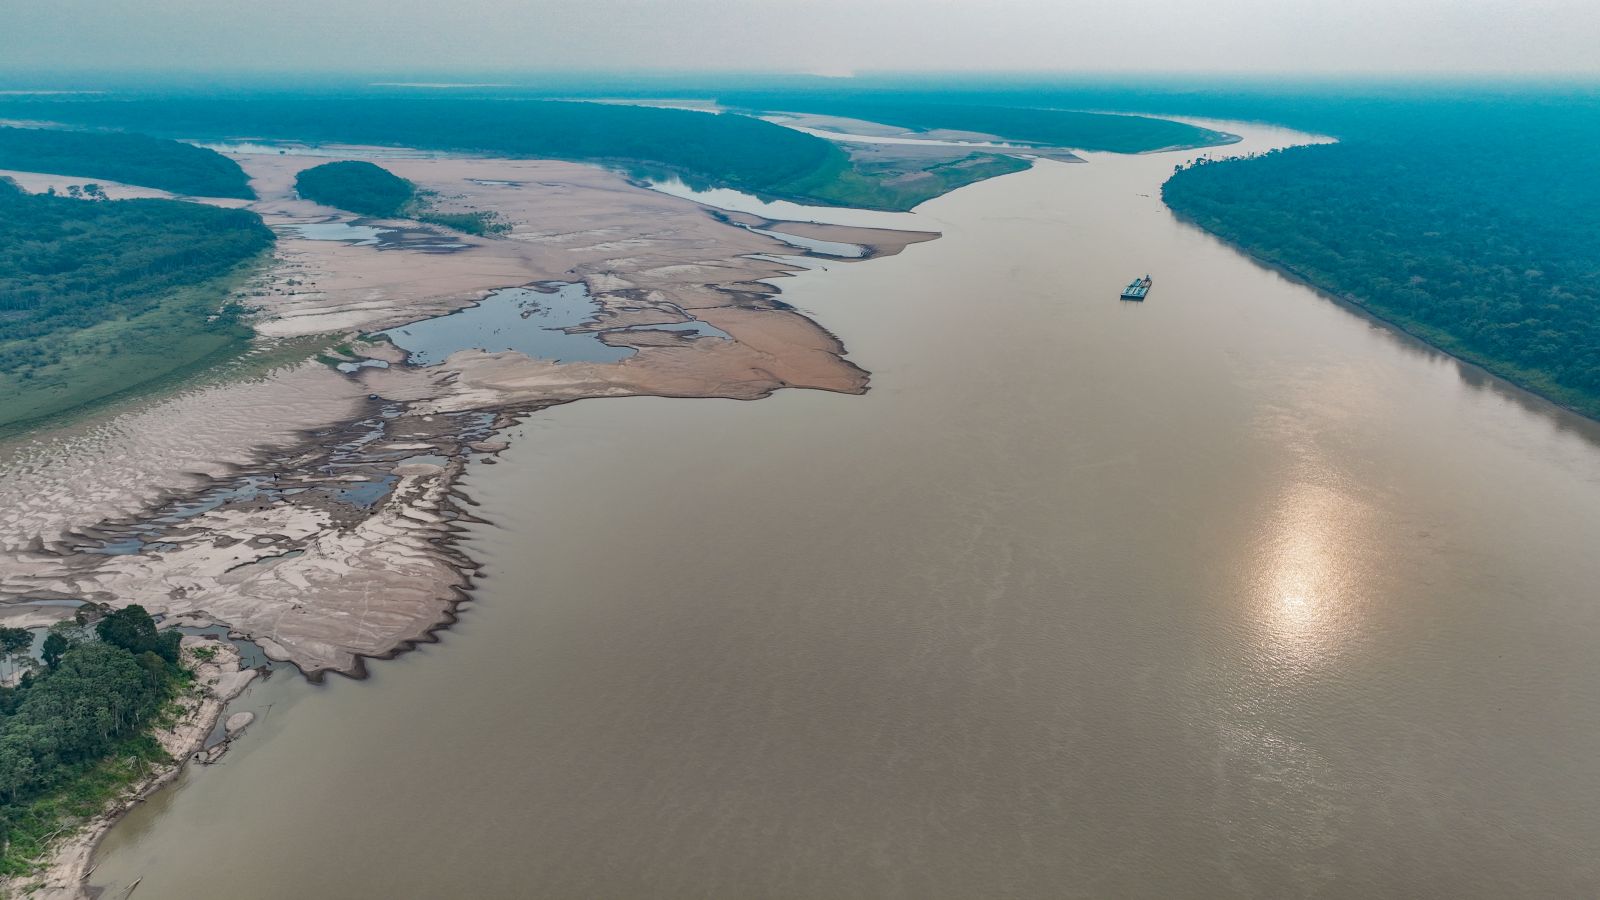 CALAMIDADE: Interior de Rondônia tem rio com menos de 1 metro de profundidade